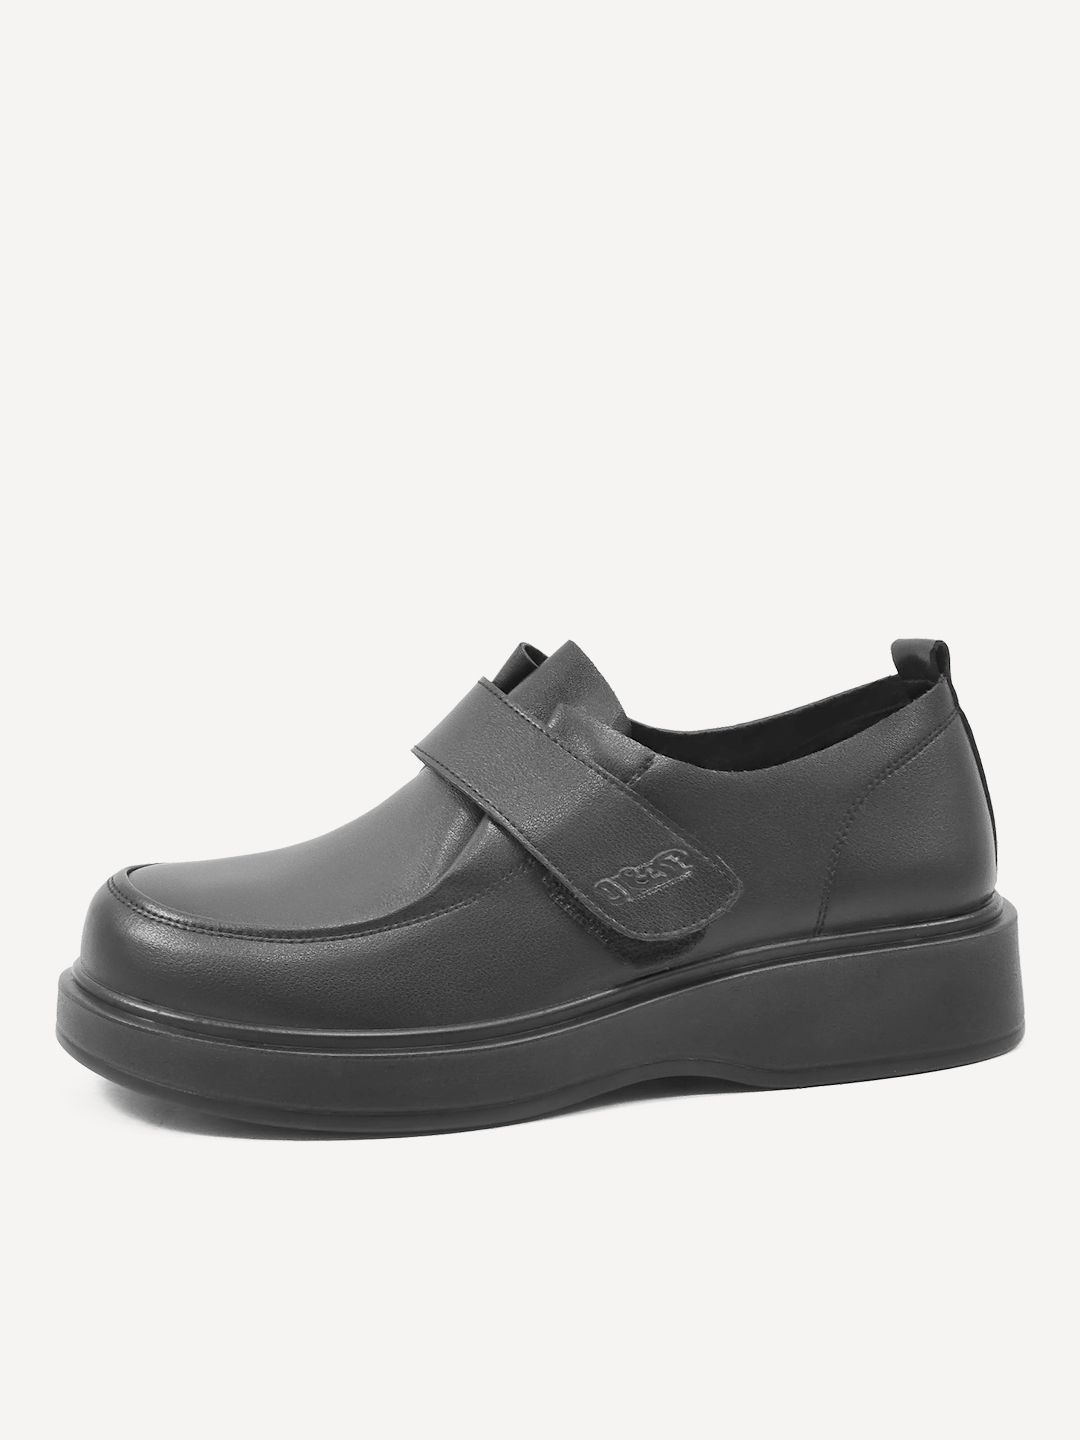 Туфли женские Baden GJ040-040 черные 38 RU